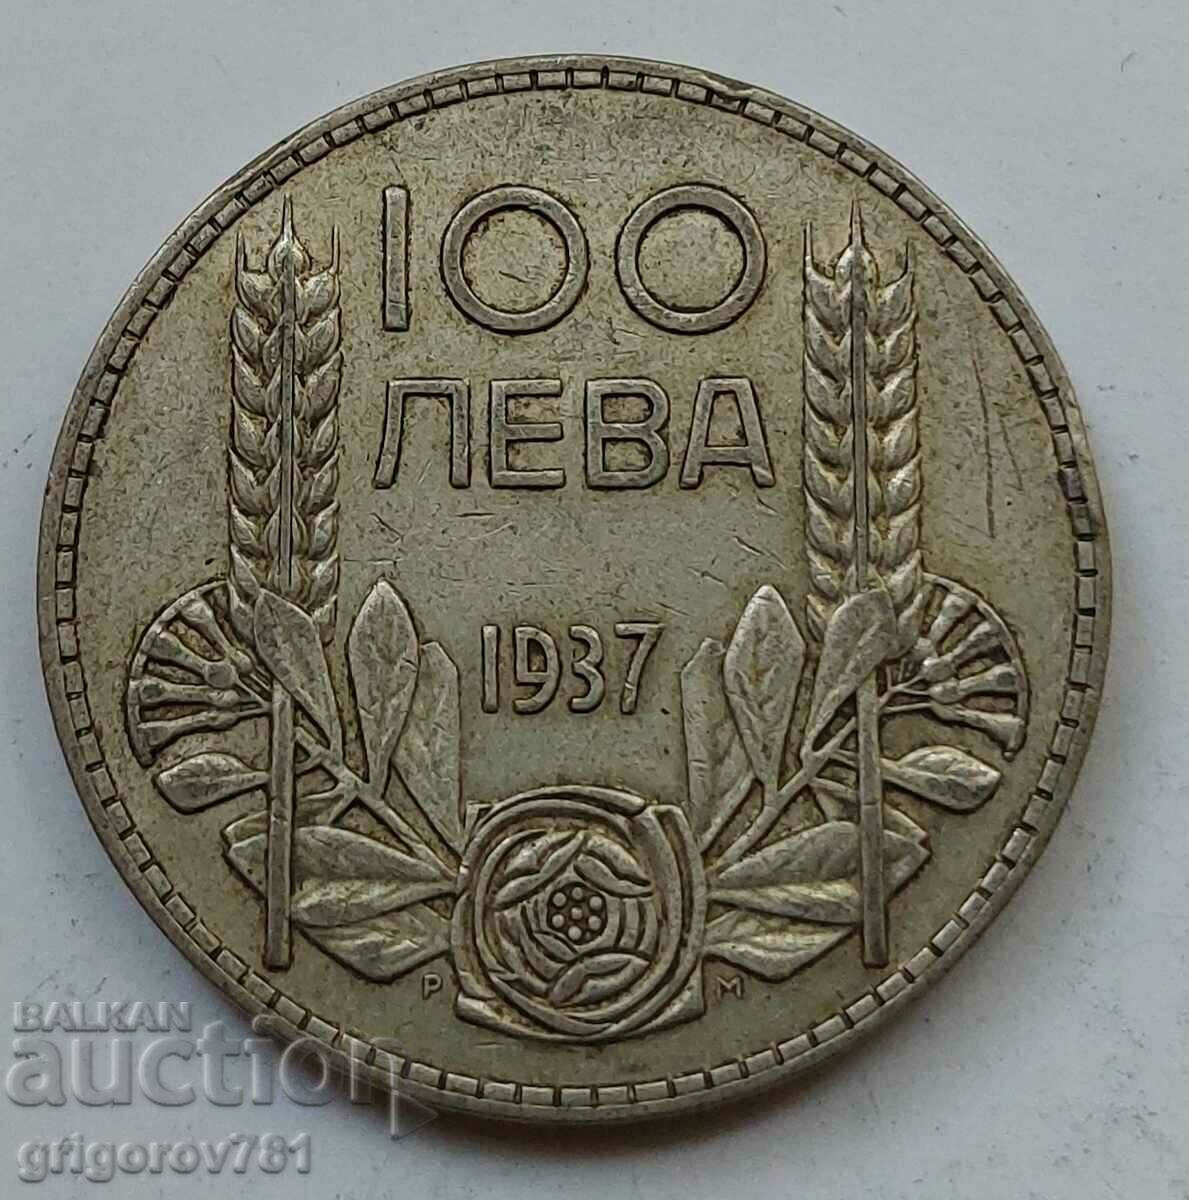 Ασήμι 100 λέβα Βουλγαρία 1937 - ασημένιο νόμισμα #82